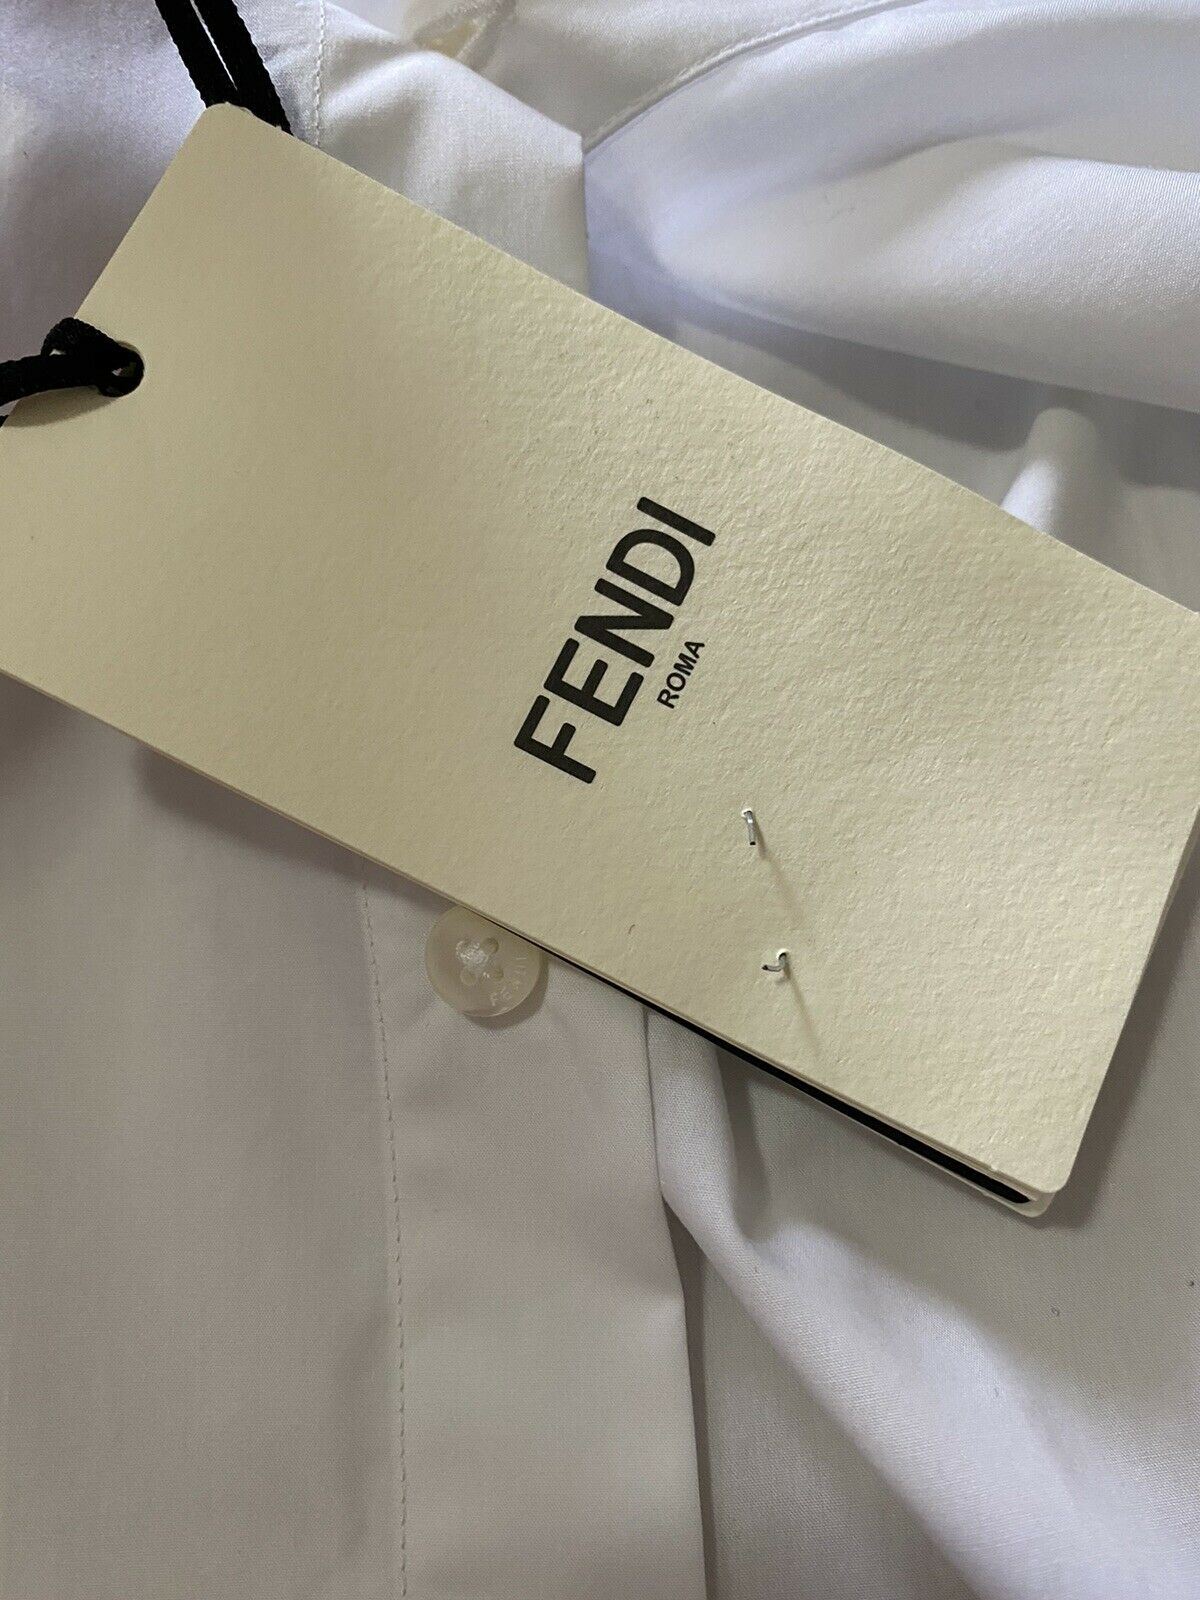 Neu $550 Fendi Herren-Hemd mit festem, verstecktem Knopf und spitzem Kragen, Weiß, XL (42 Eu)